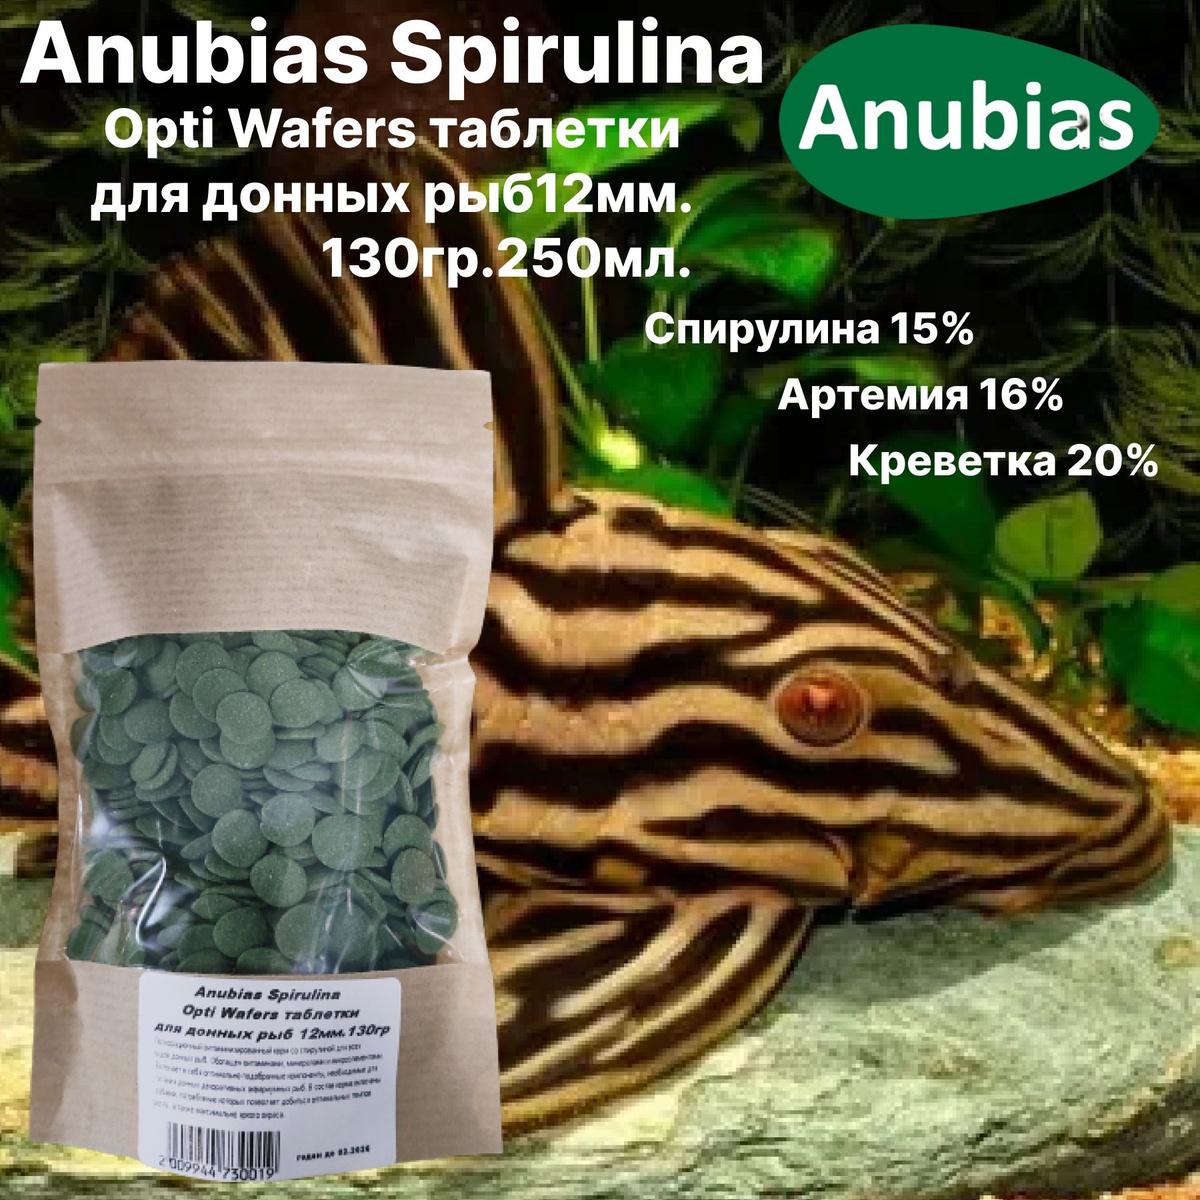 Anubias Spirulina Opti Wafers таблетки для донных рыб 12мм.130гр.250мл.Основной полноценный, 100% растительный, корм сухой, тонущий для донных рыб.